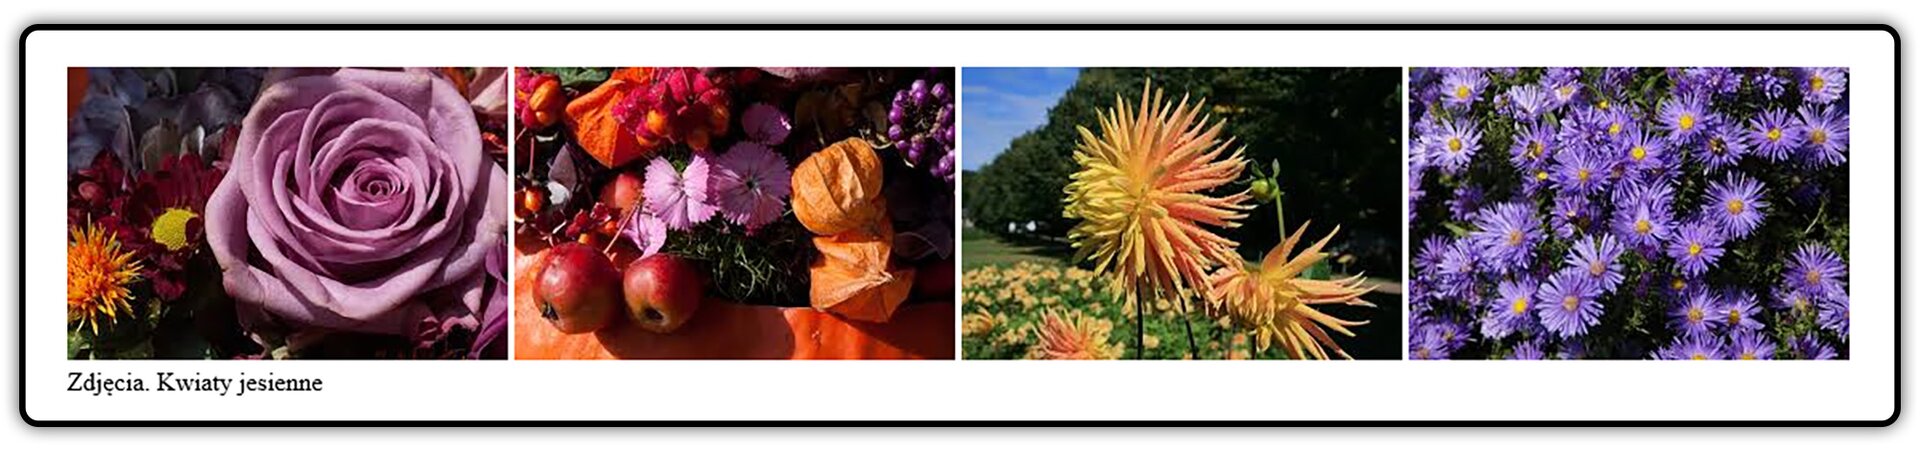 Fotografie przedstawiające kwiaty polskie